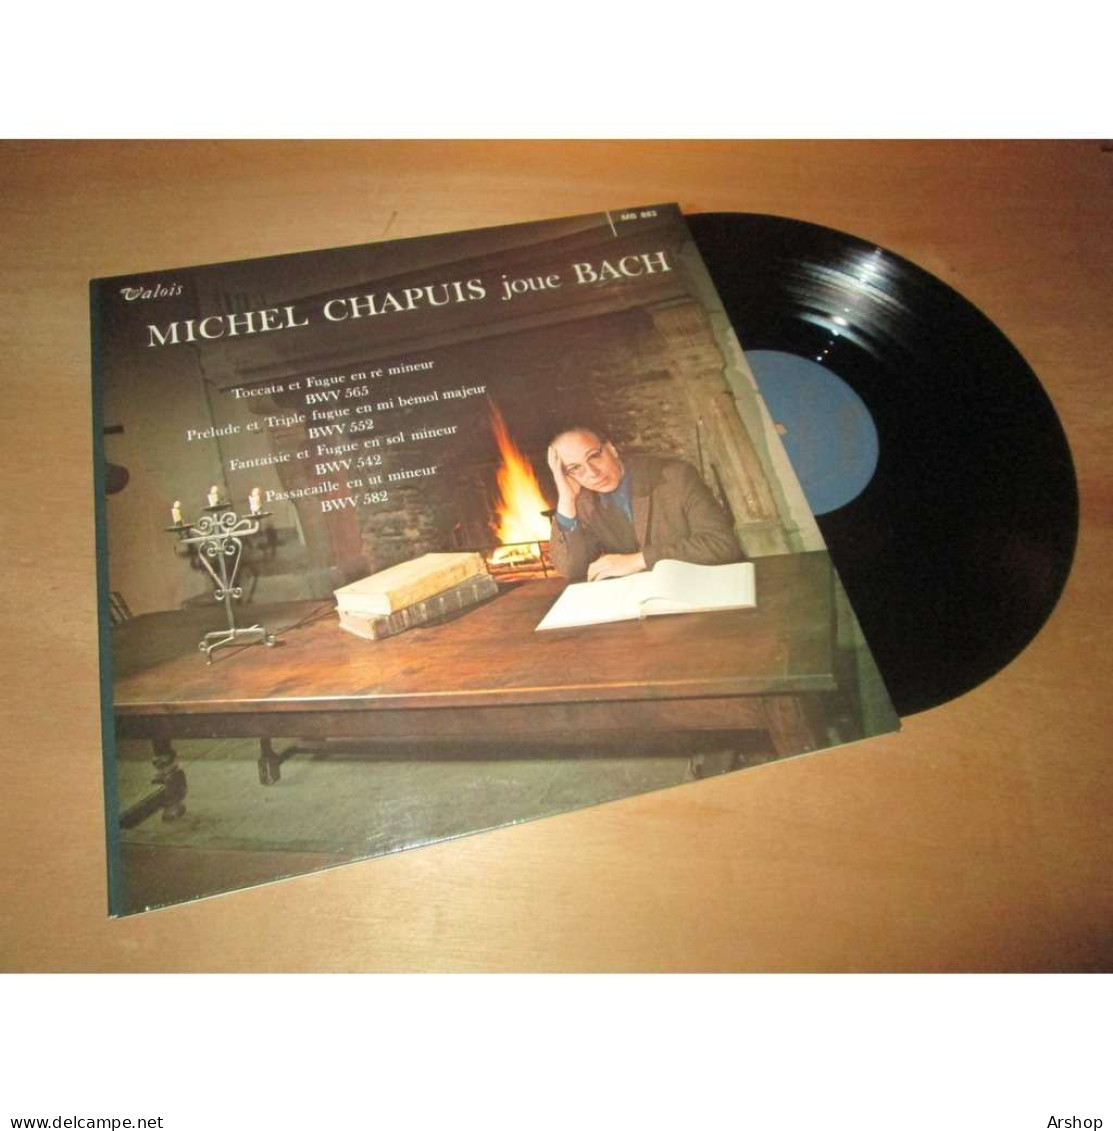 MICHEL CHAPUIS Joue BACH -  VALOIS MB 883 Lp - Klassik